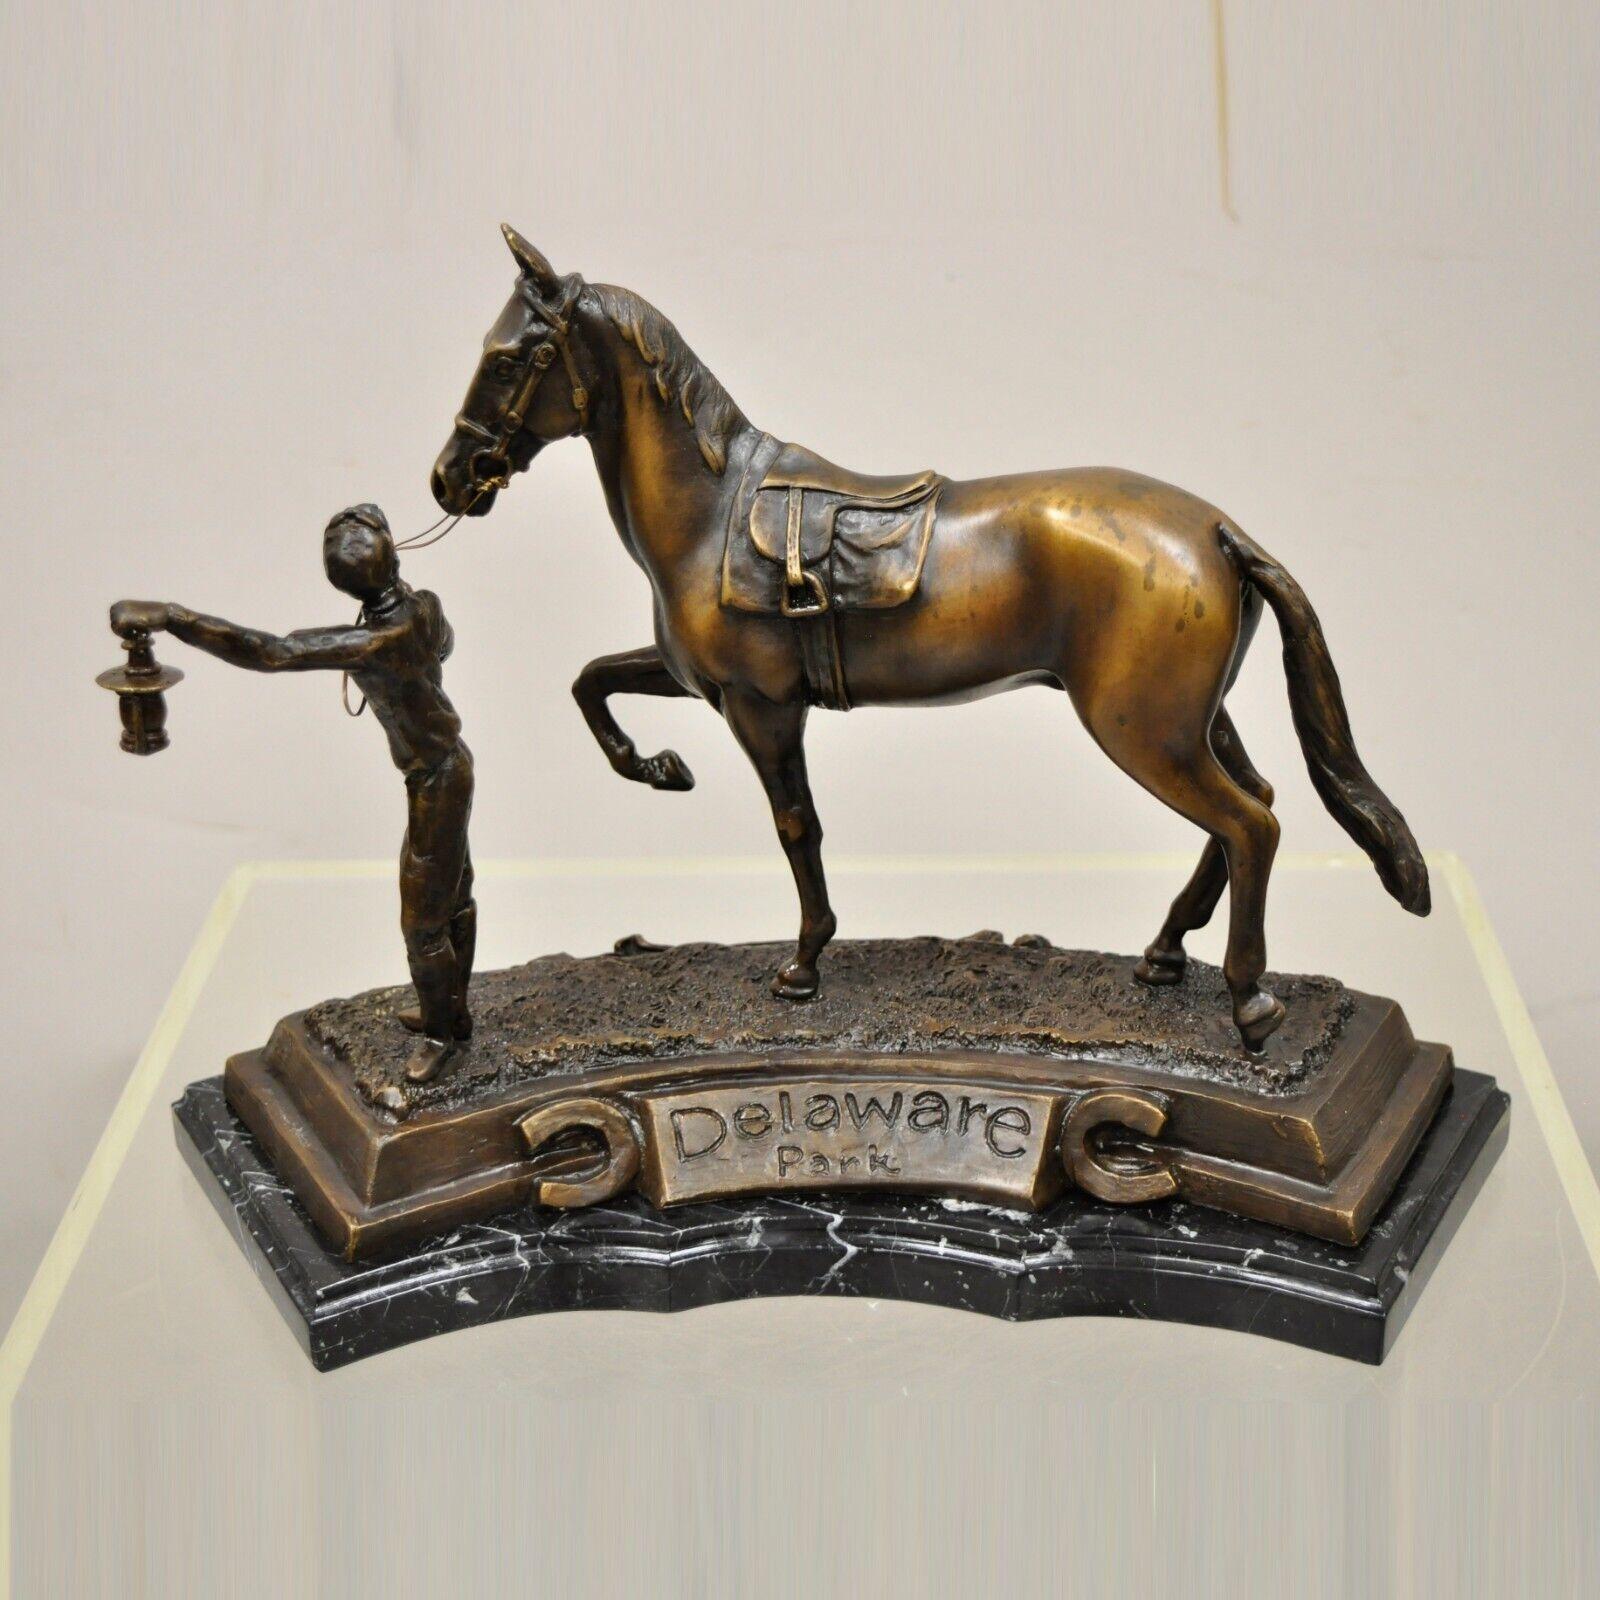 Delaware Park Bronze Reiter Jockey führt Rennpferd mit Laterne Skulptur Statue. Bronzefigur eines Jockeys, der das Rennen anführt, mit Laterne, halbrundem Sockel aus schwarzem Marmor und der Aufschrift 